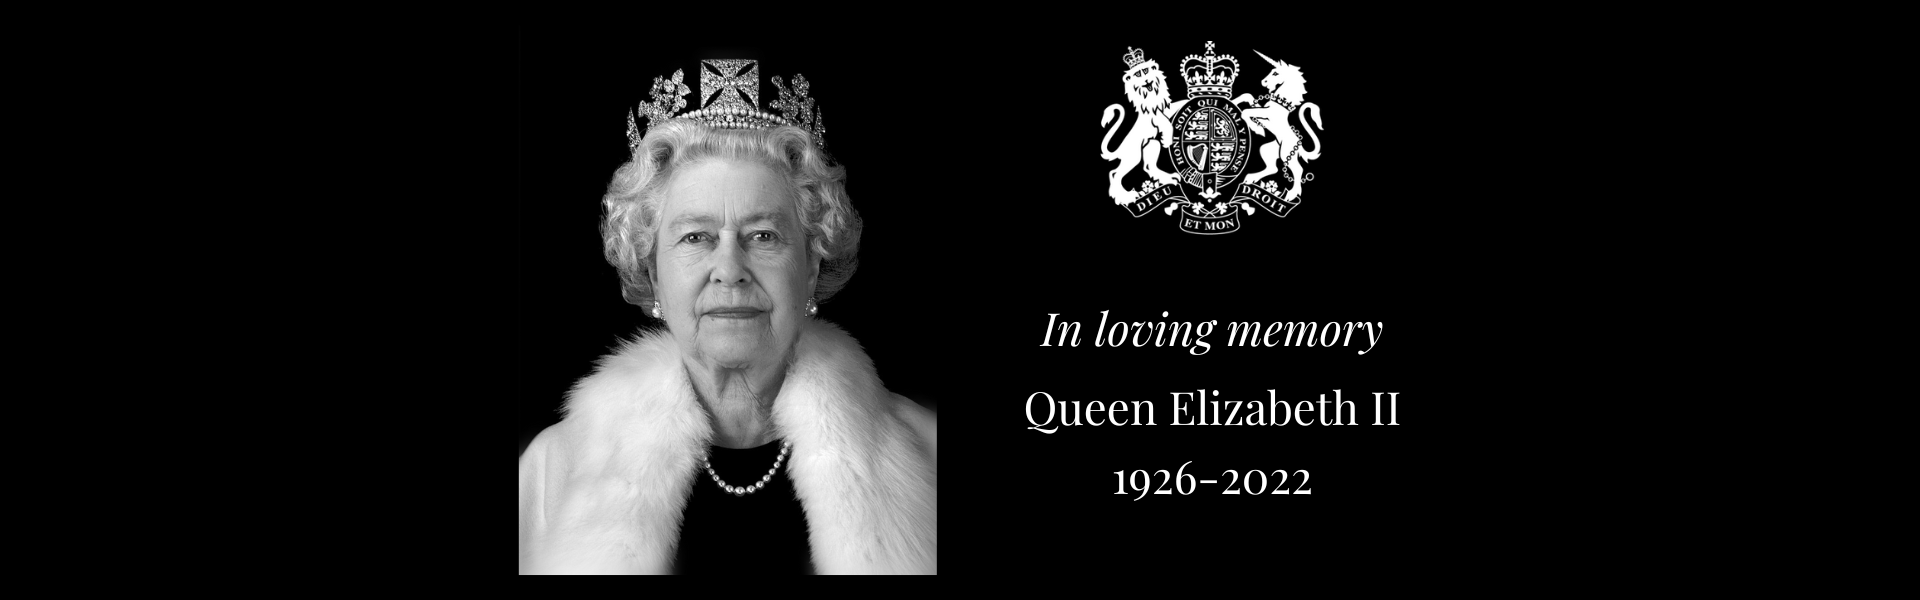 Queen Elizabeth II homepage banner